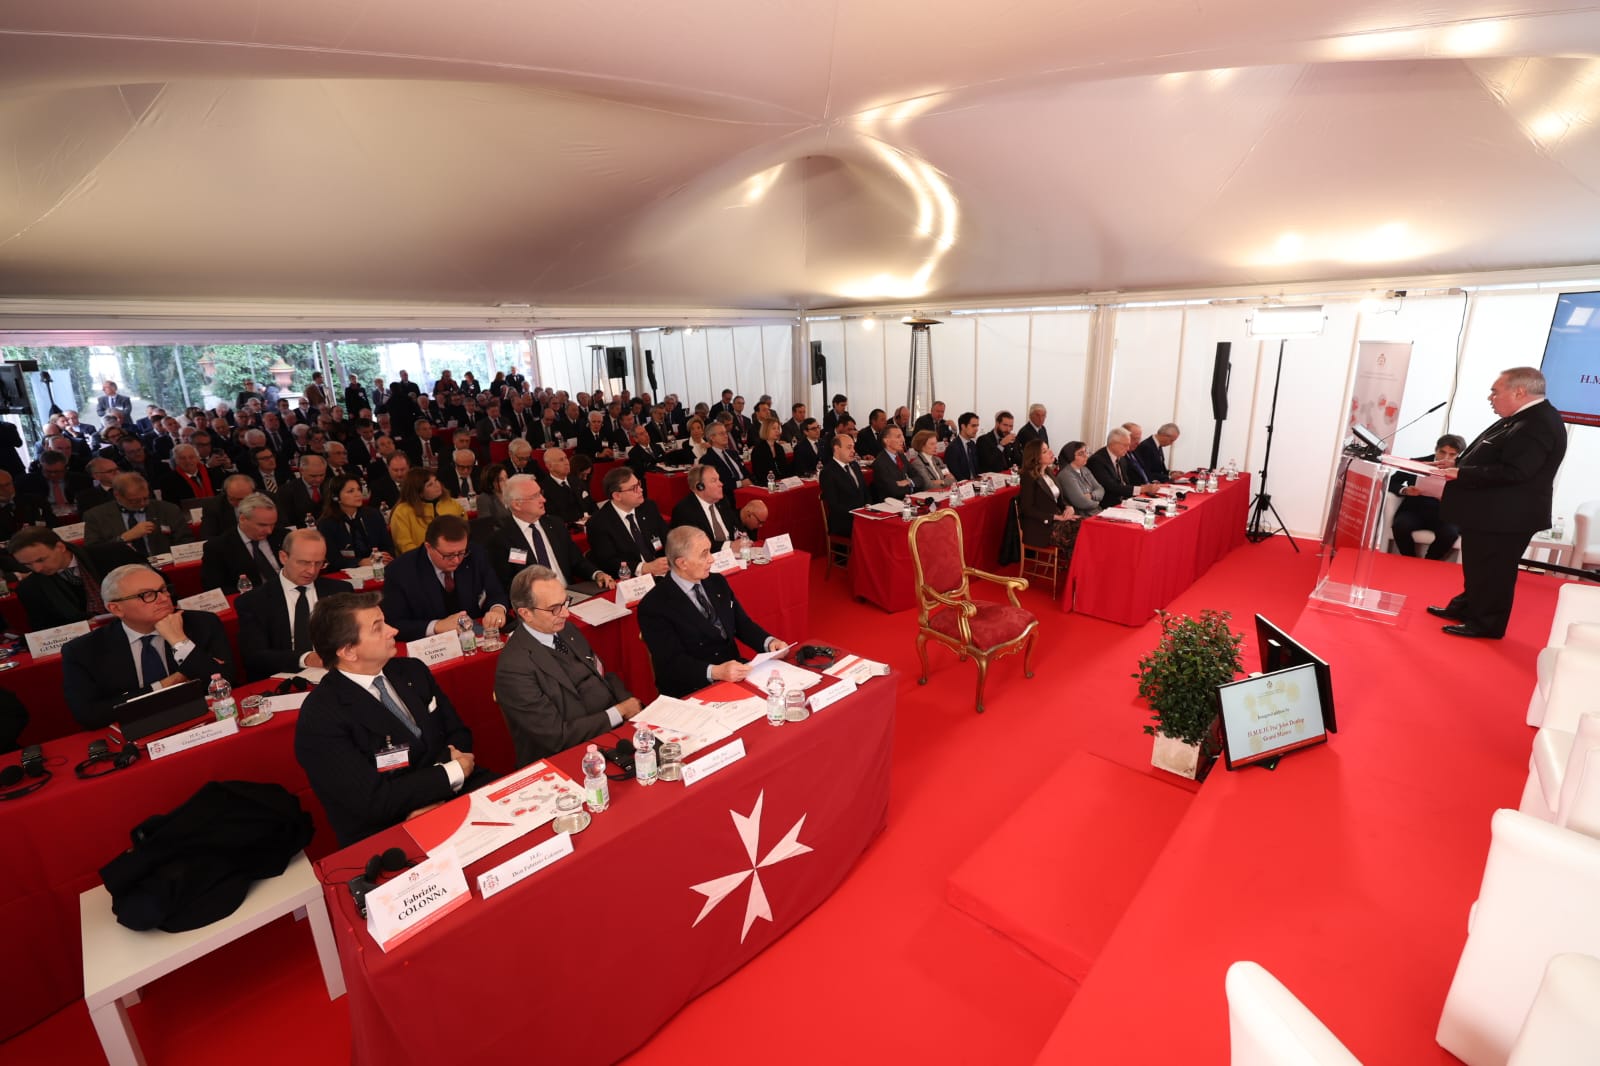 Künstliche Intelligenz und humanitäre Diplomatie im Mittelpunkt des zweiten Tages der Botschafterkonferenz des Souveränen Malteser-Ritterordens